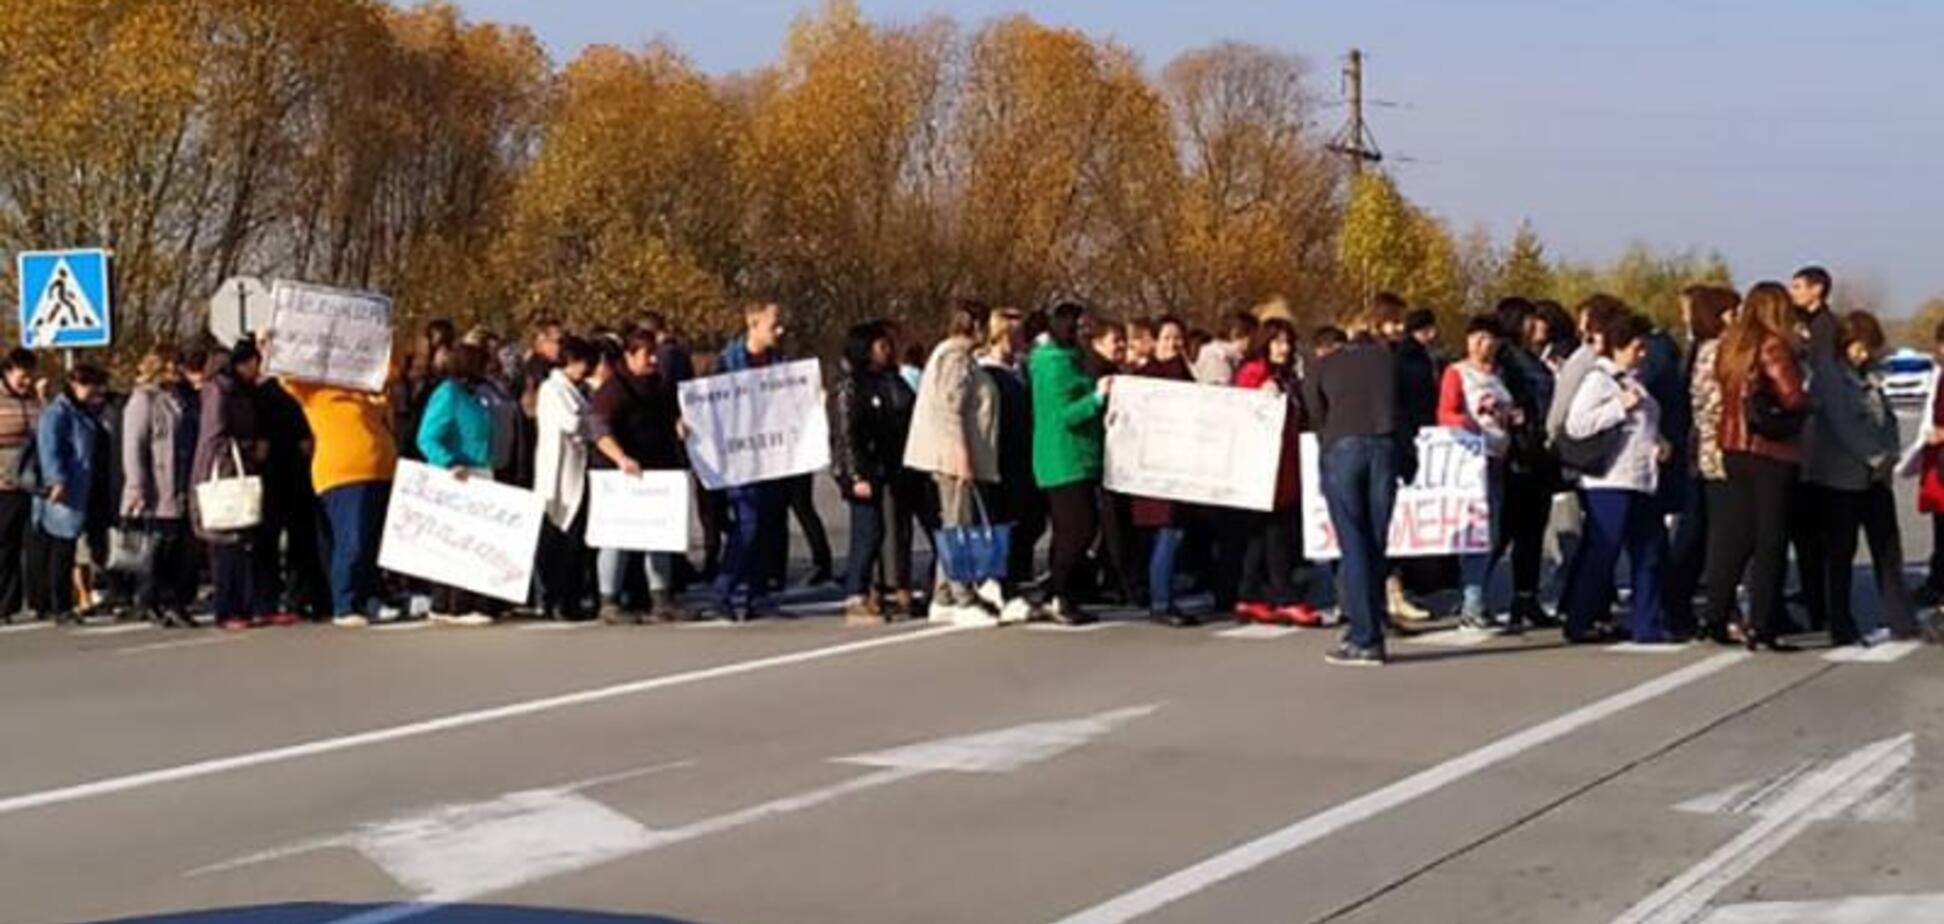 Вчителі перекрили дорогу під Житомиром через проблеми із зарплатами